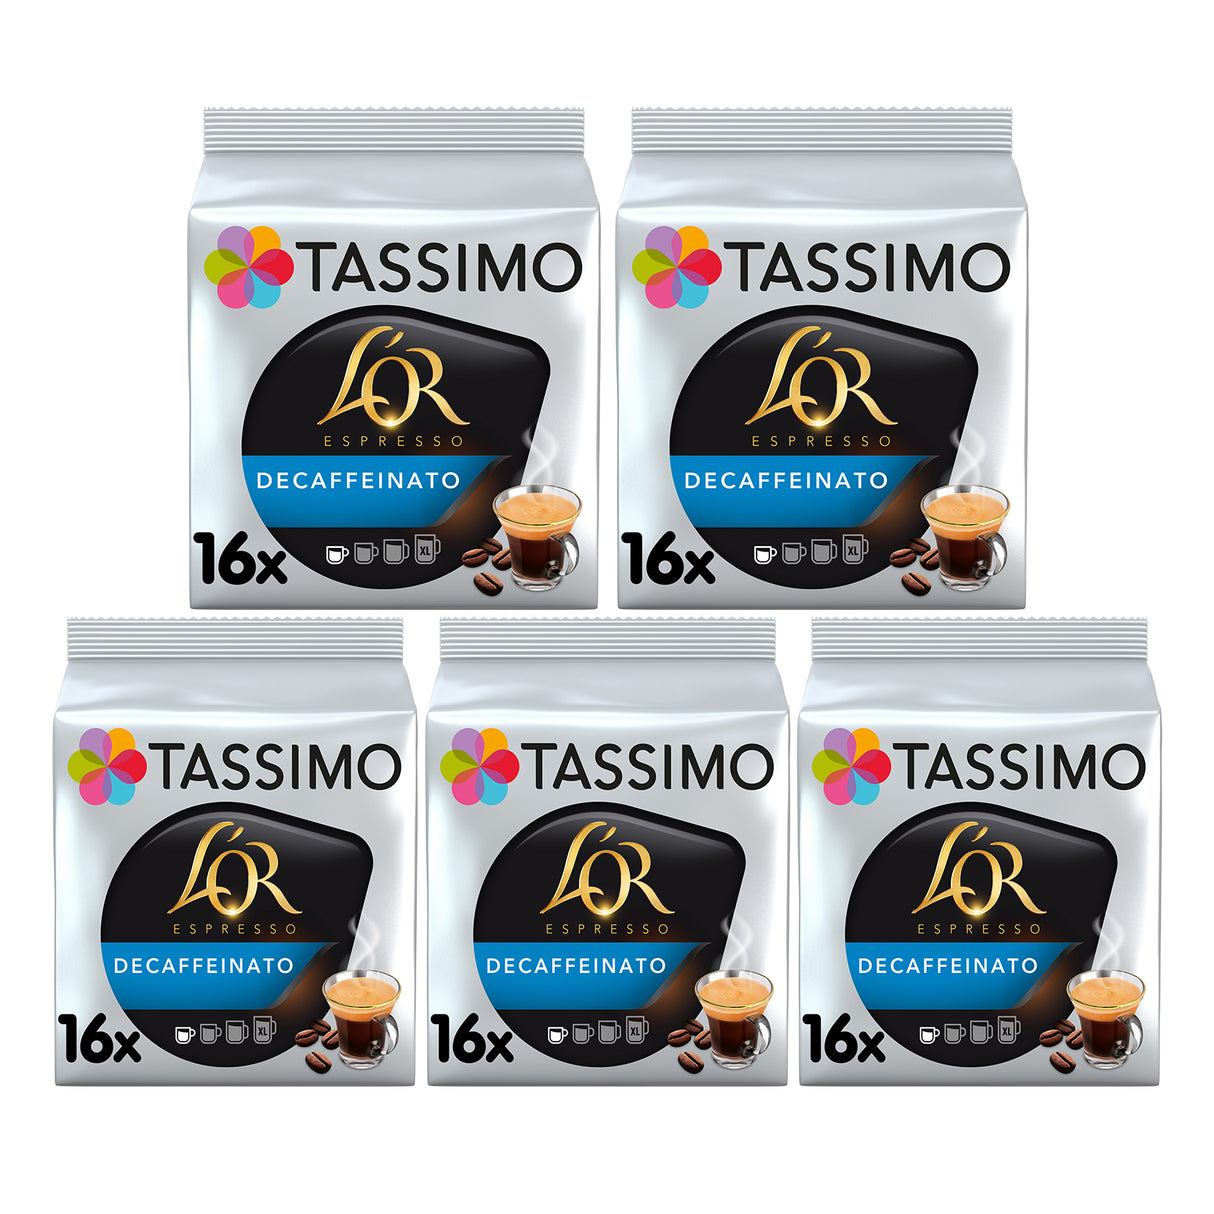 Tassimo L'OR Espresso Decaffeinato Case